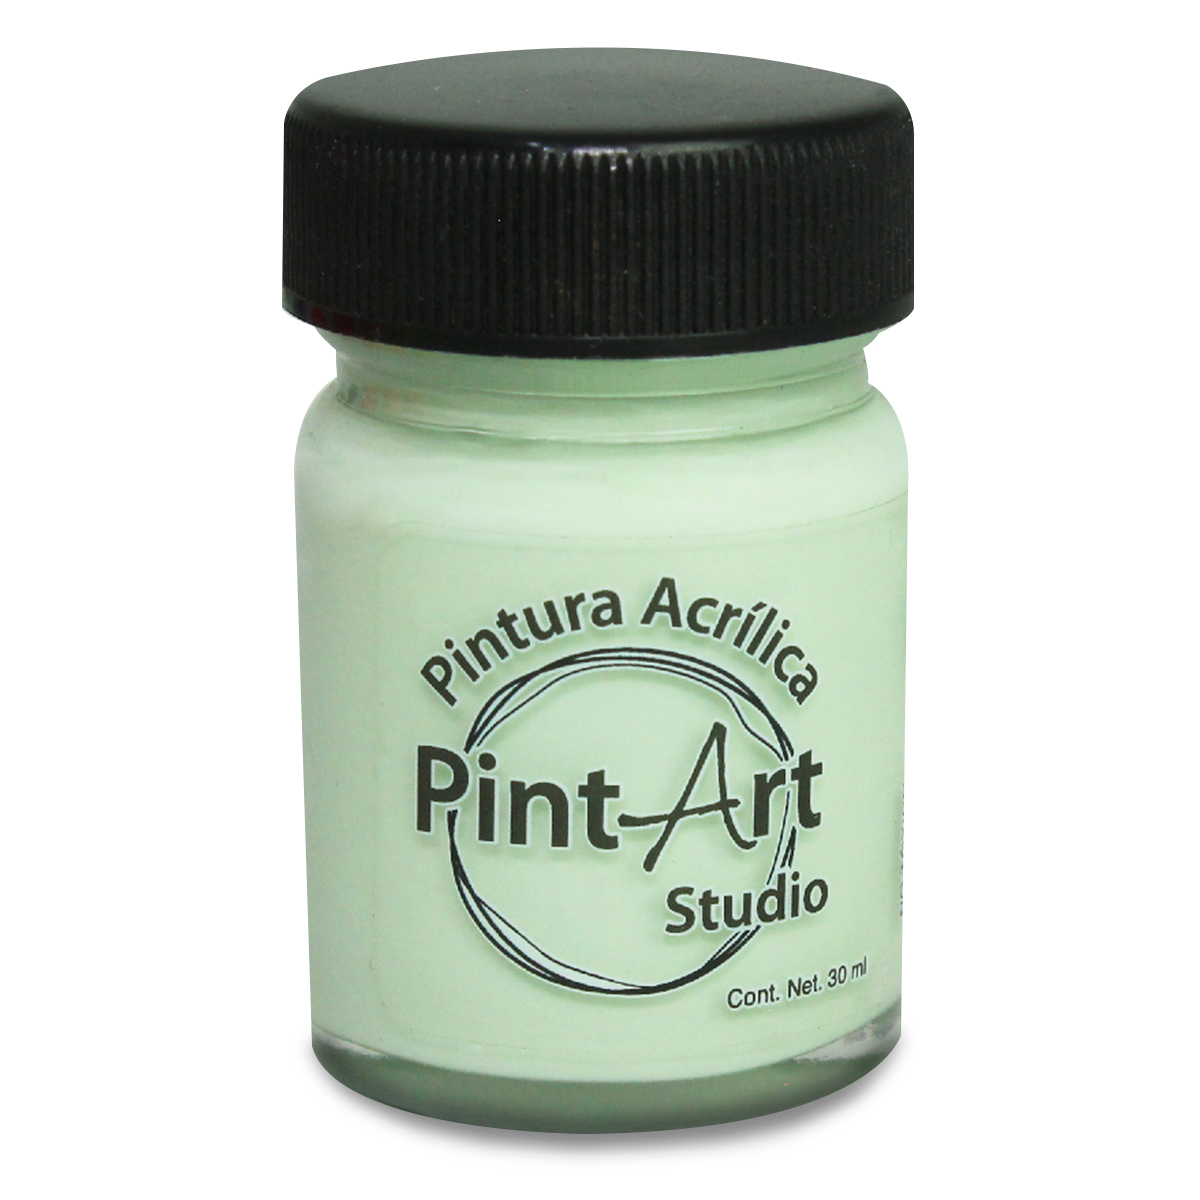 Pintura Acrílica PintArt Studio No.509 / Verde lladro / 1 pieza / 30 ml